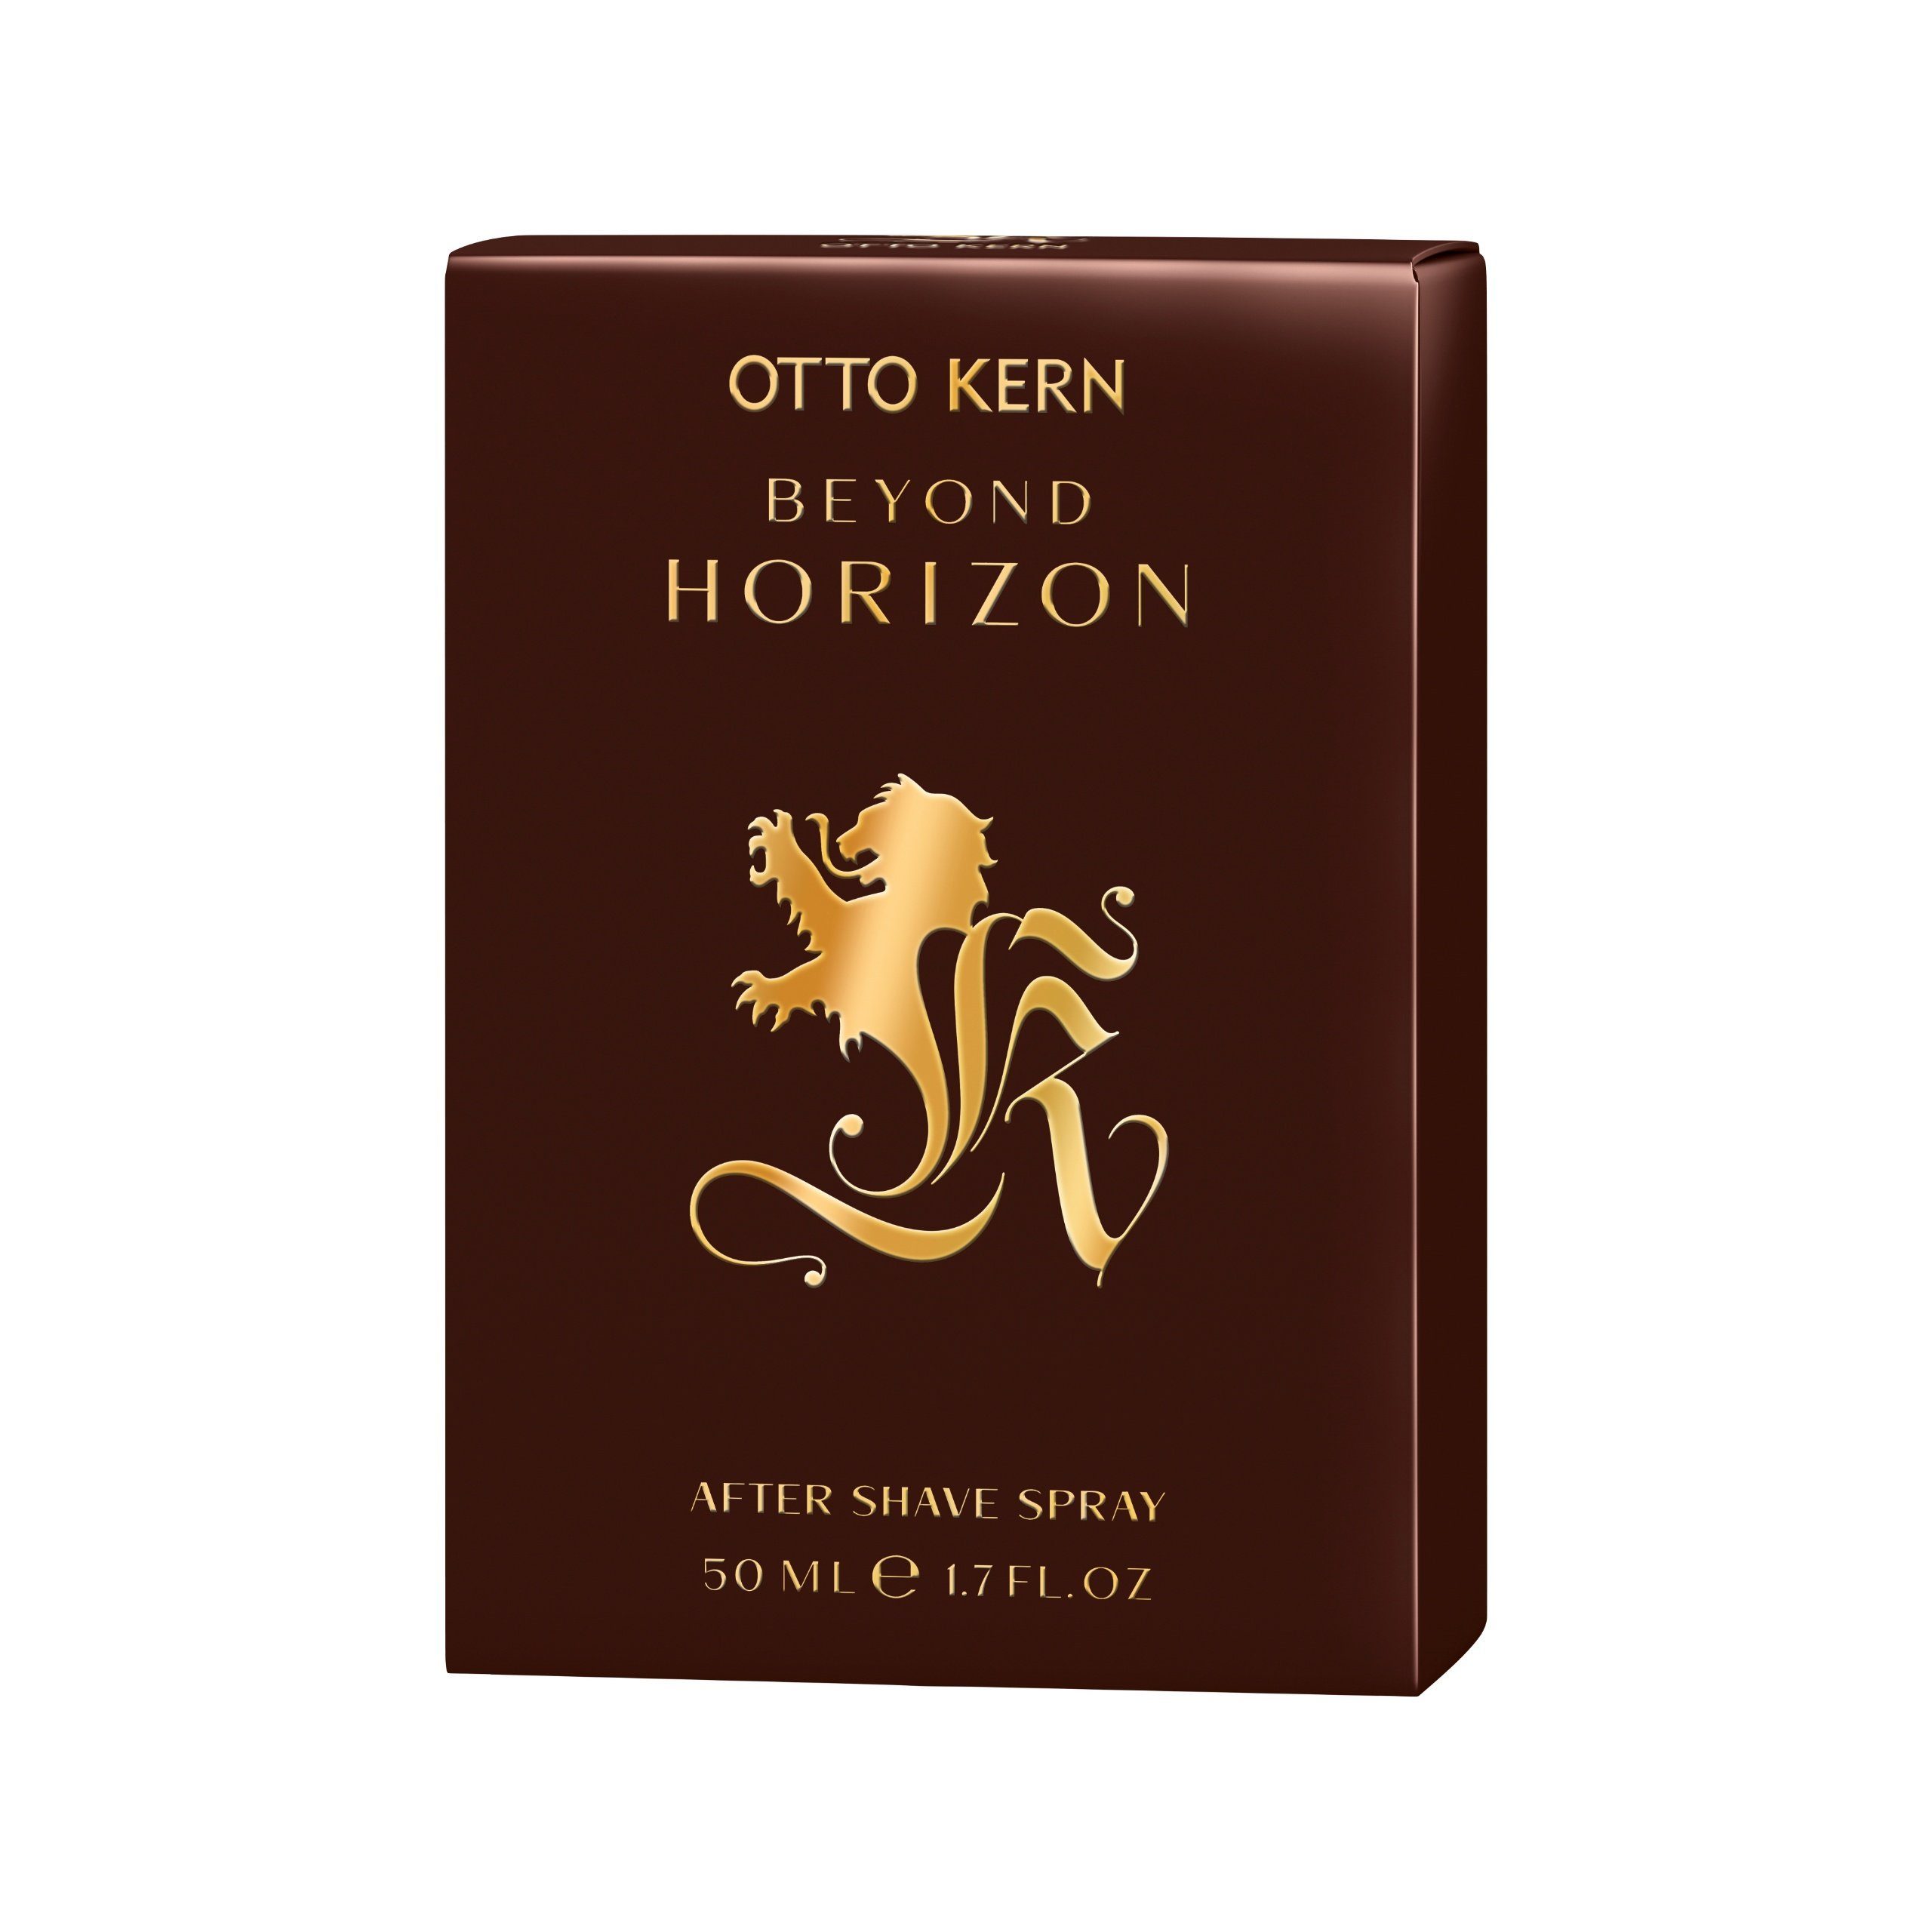 Otto Kern Kern Gesichts-Reinigungslotion Beyond ml Spray Horizon After Shave Kern 50